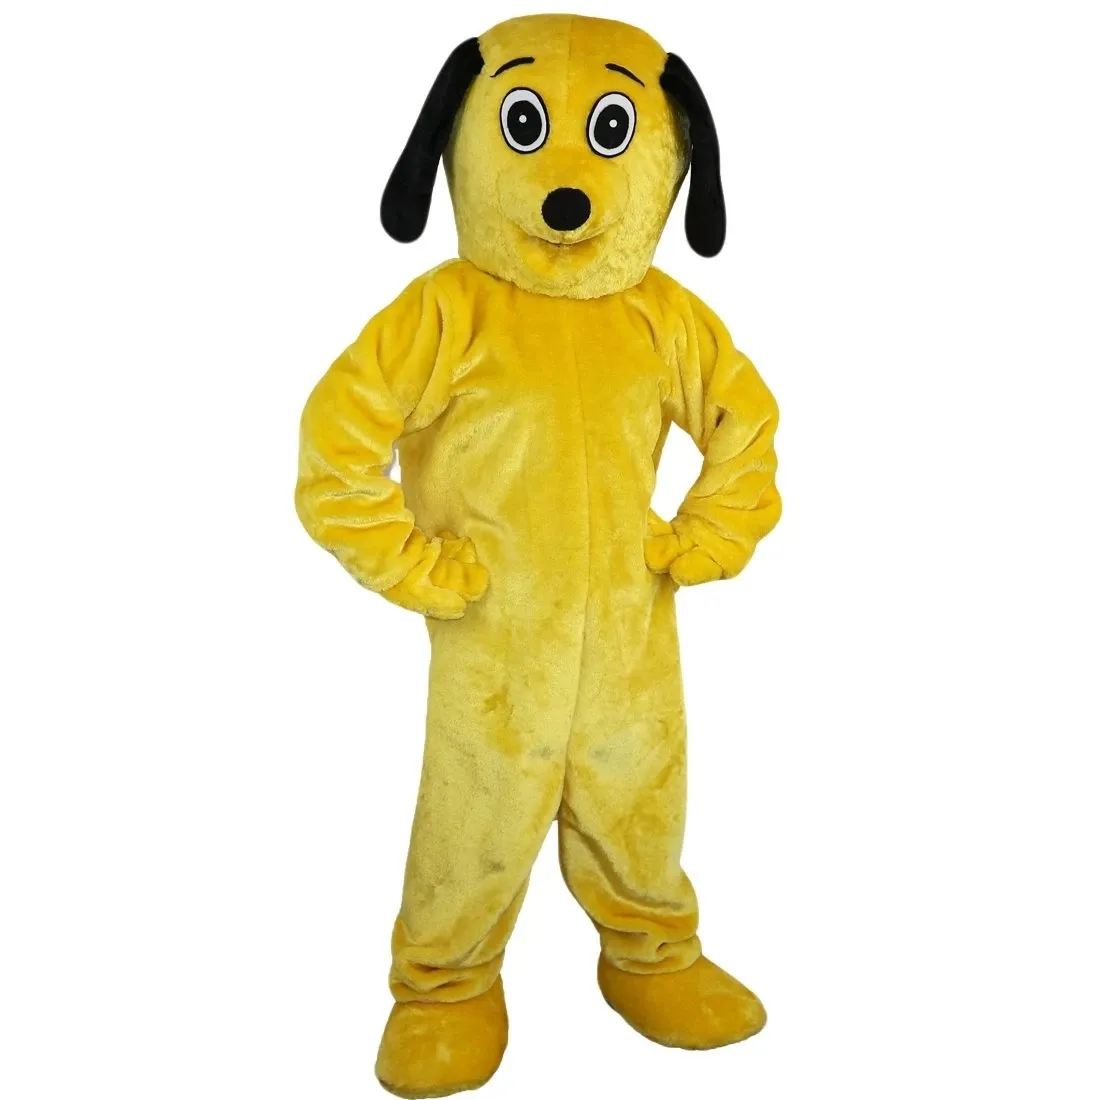 Costume de mascotte de chien Fursuit jaune Costumes d'animaux unisexes vêtements de personnage de dessin animé pour adultes mascottes fête Halloween